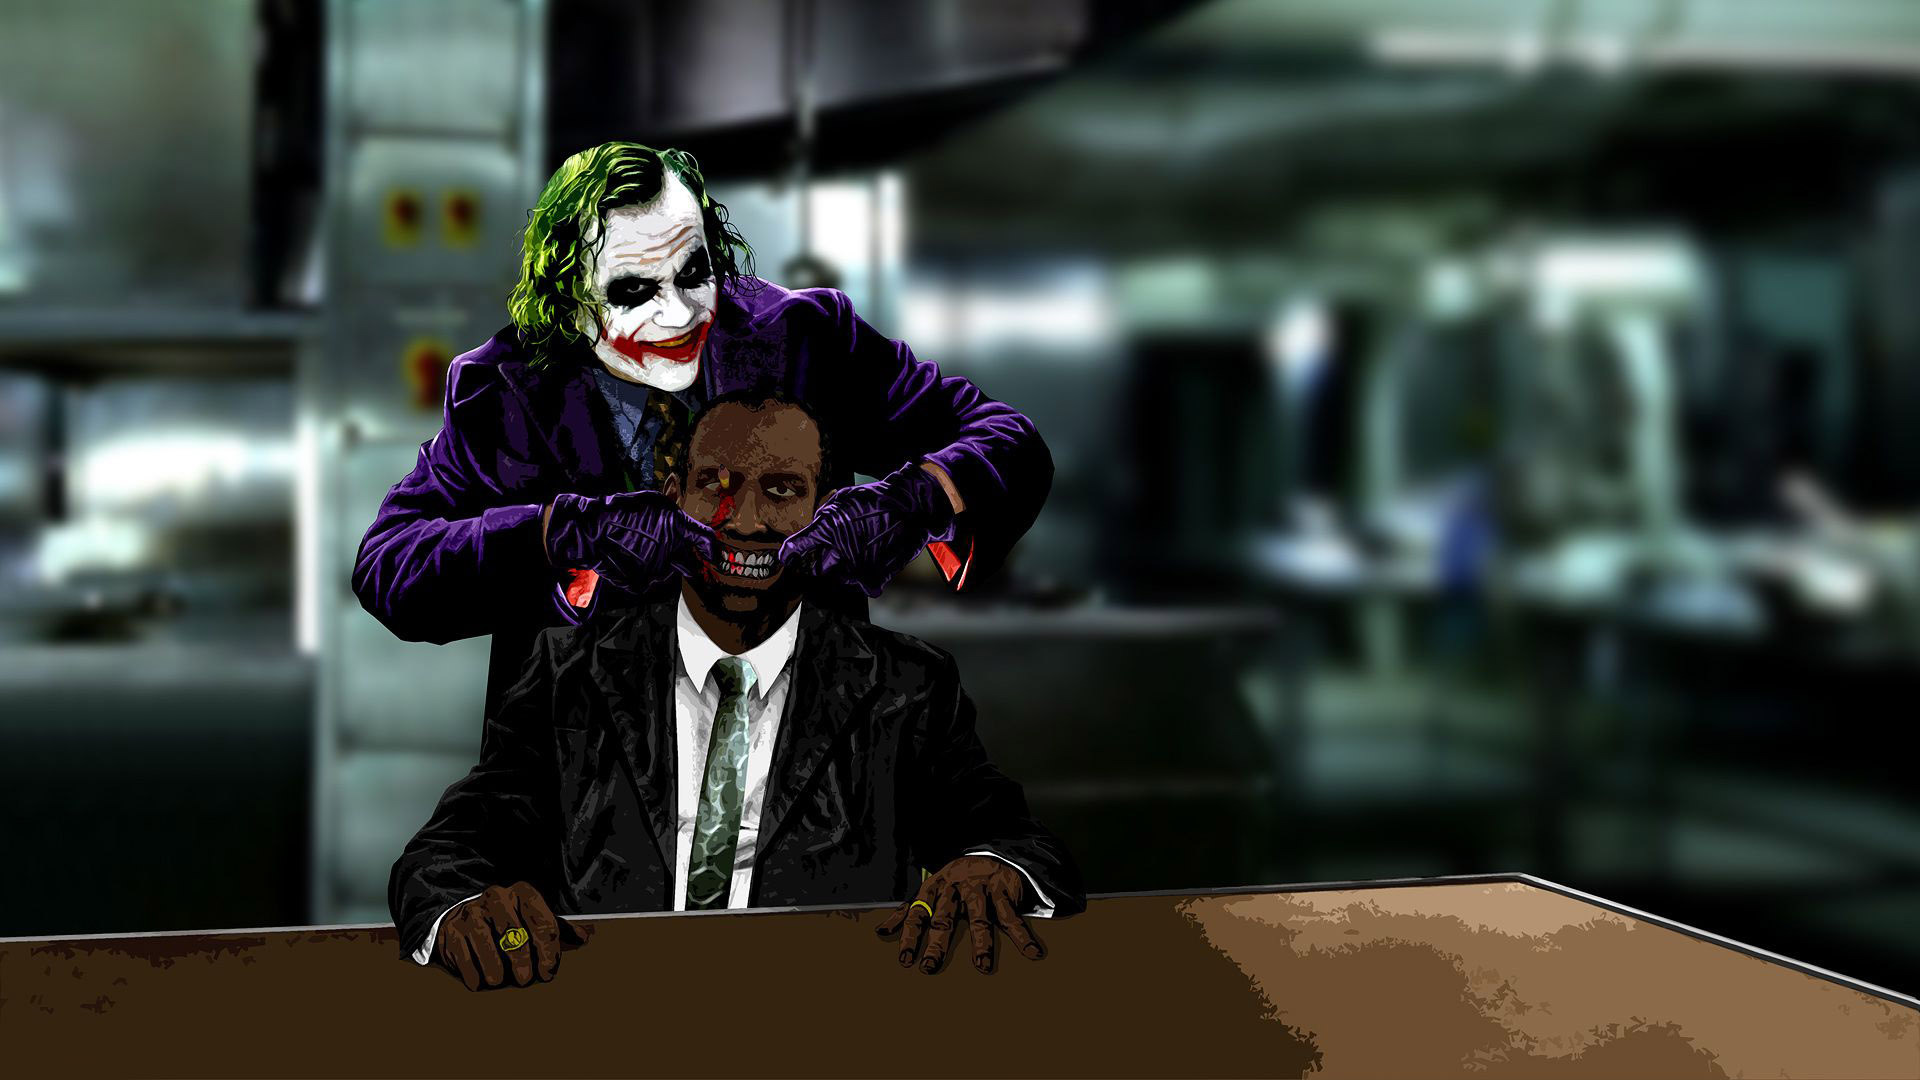 Joker The Dark Knight Wallpaper